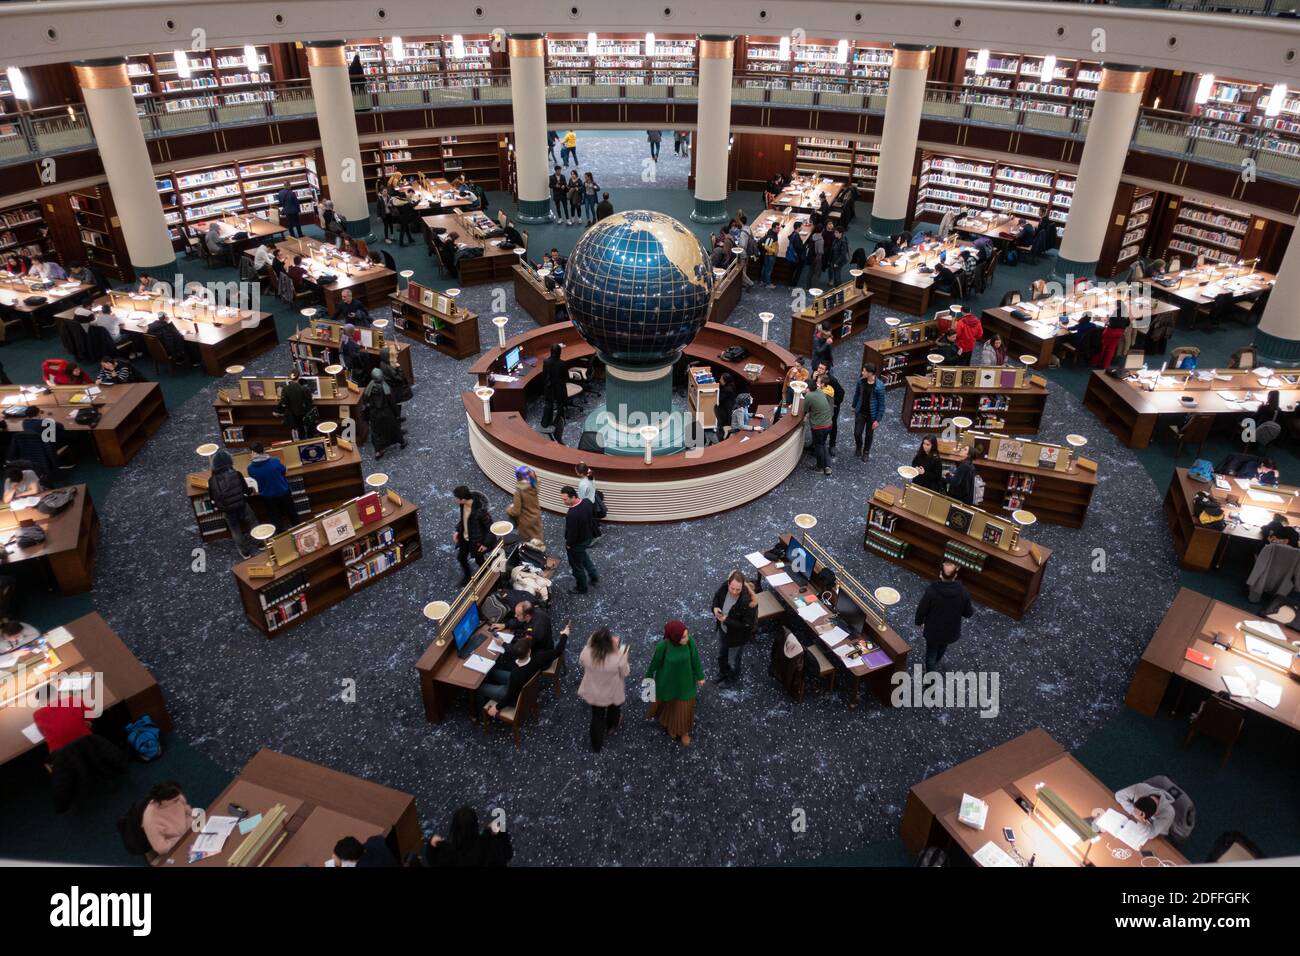 Schöne und ästhetische Innenansicht eines sehr überfüllten luxuriösen Bibliothek mit einem Globus mit Lerntischen und Bücherregalen abgerundet Stockfoto